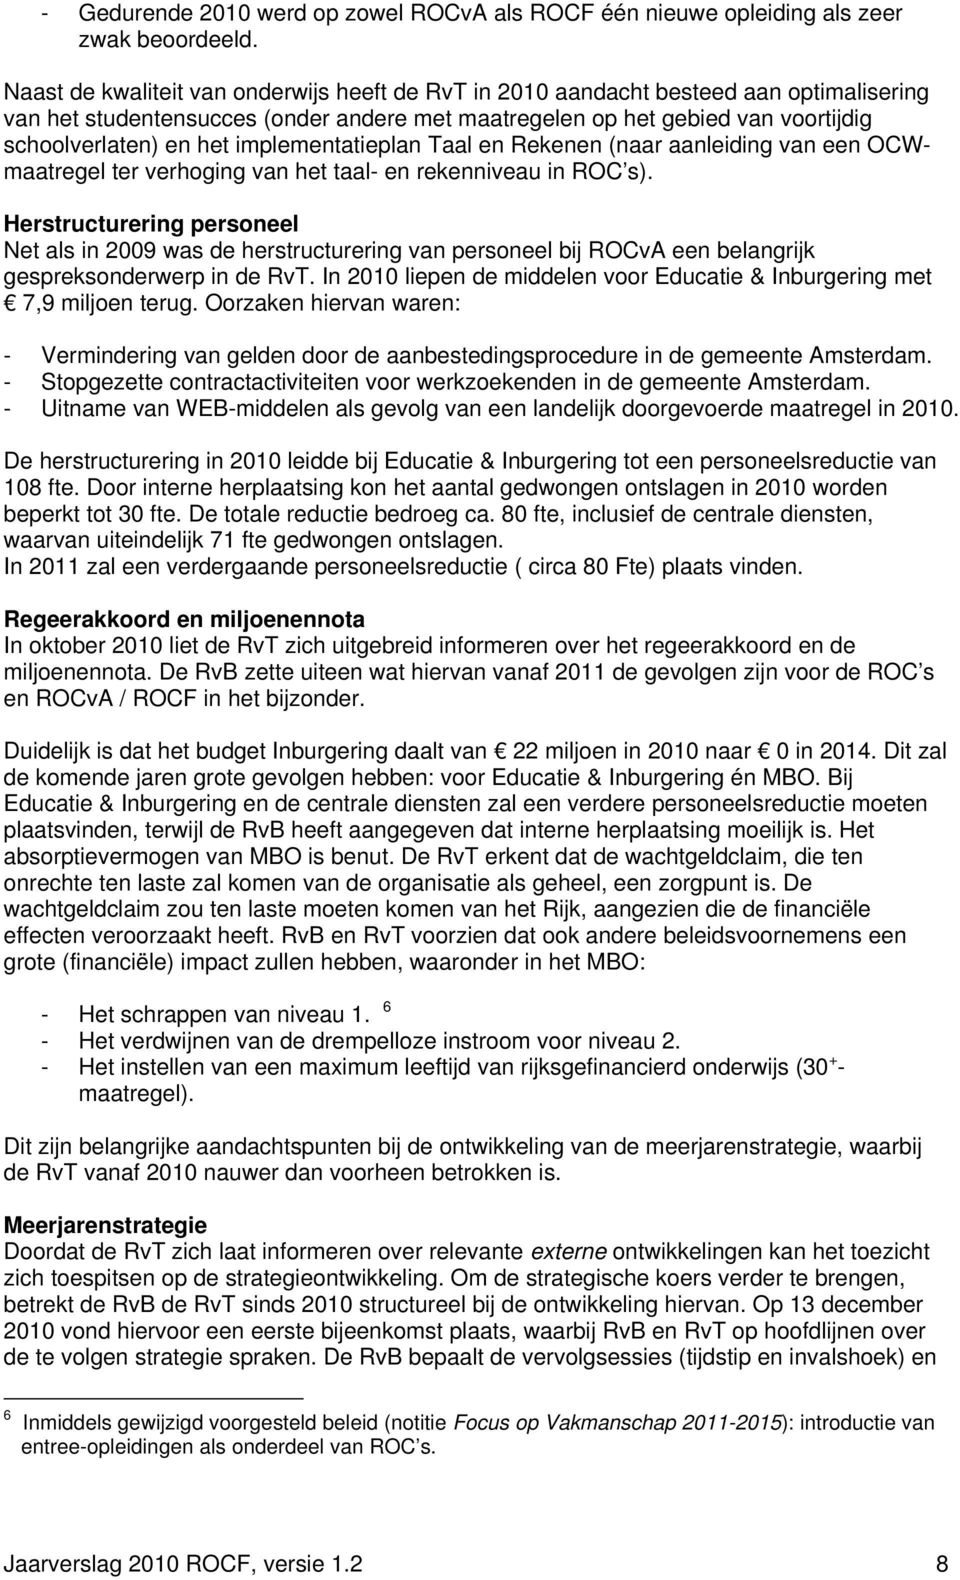 implementatieplan Taal en Rekenen (naar aanleiding van een OCWmaatregel ter verhoging van het taal- en rekenniveau in ROC s).